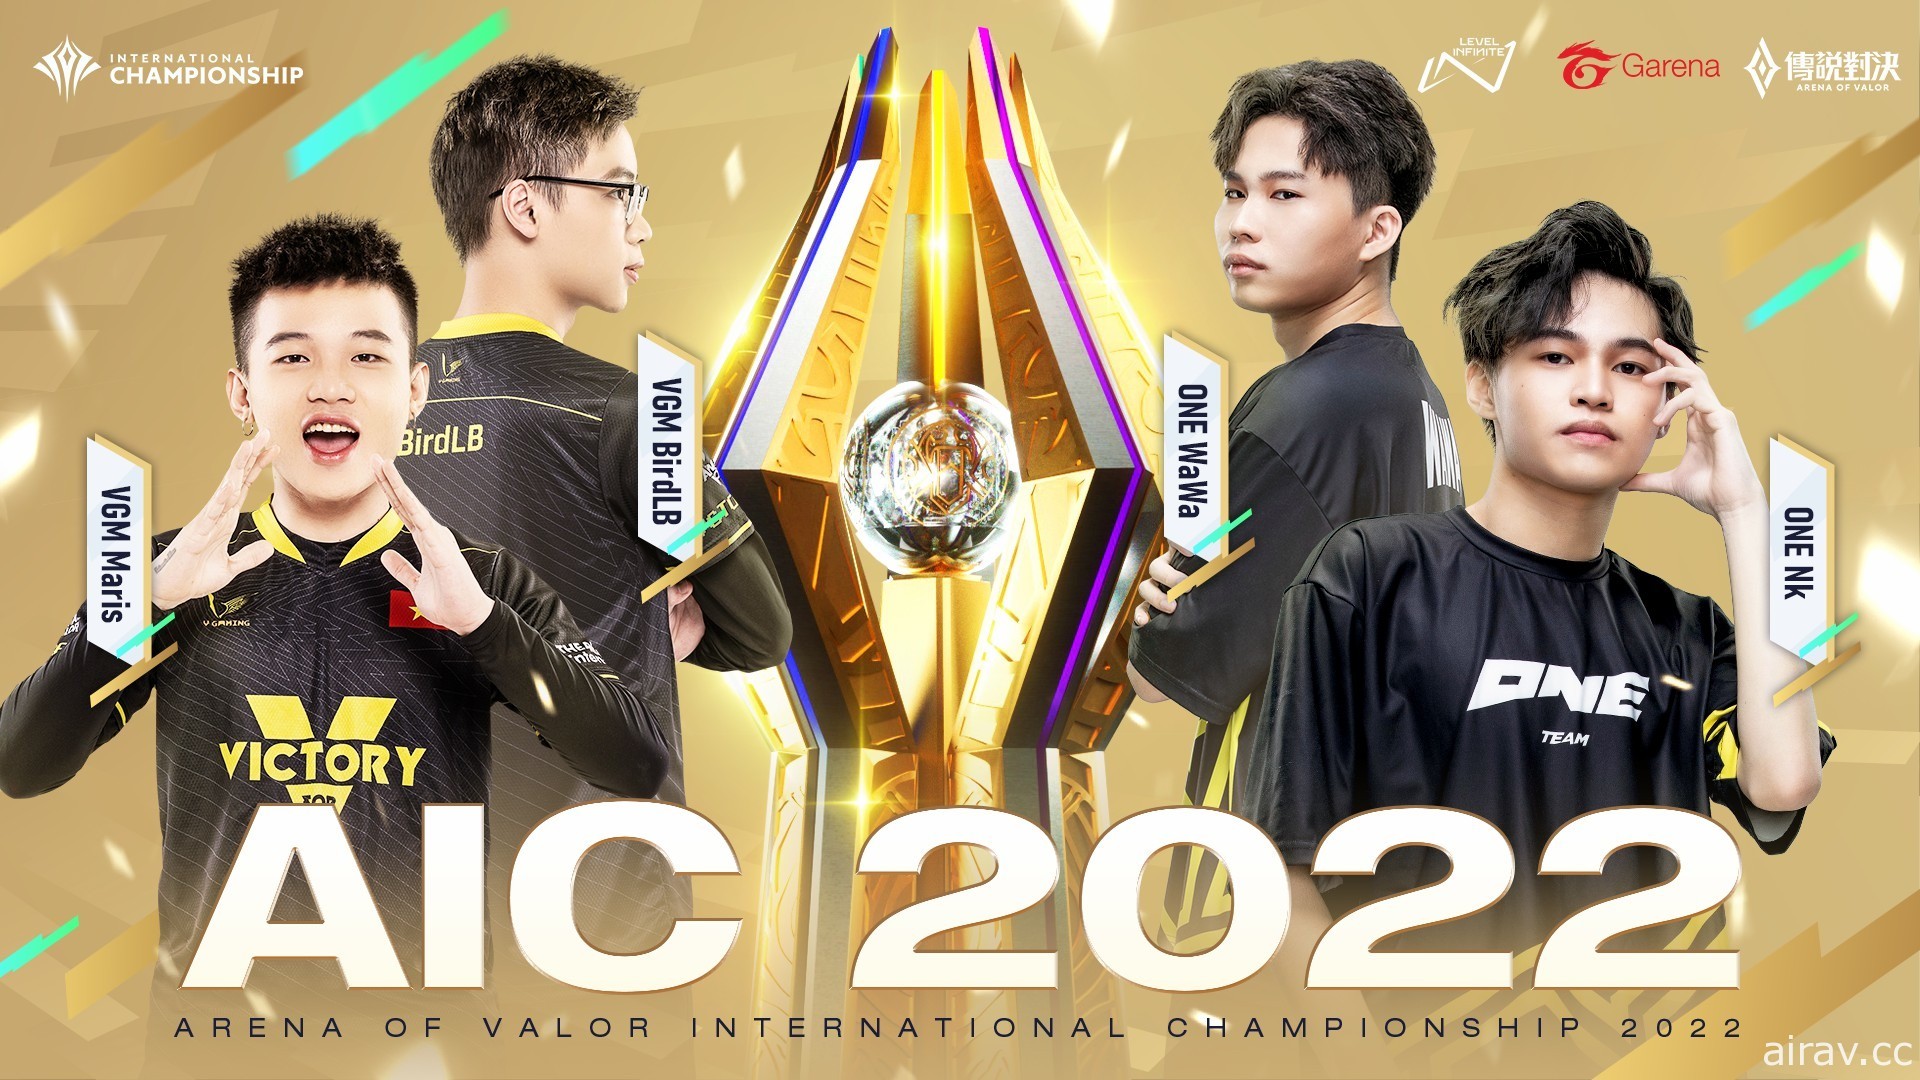 《傳說對決》AIC 2022 總冠軍賽 7 月 10 日開打